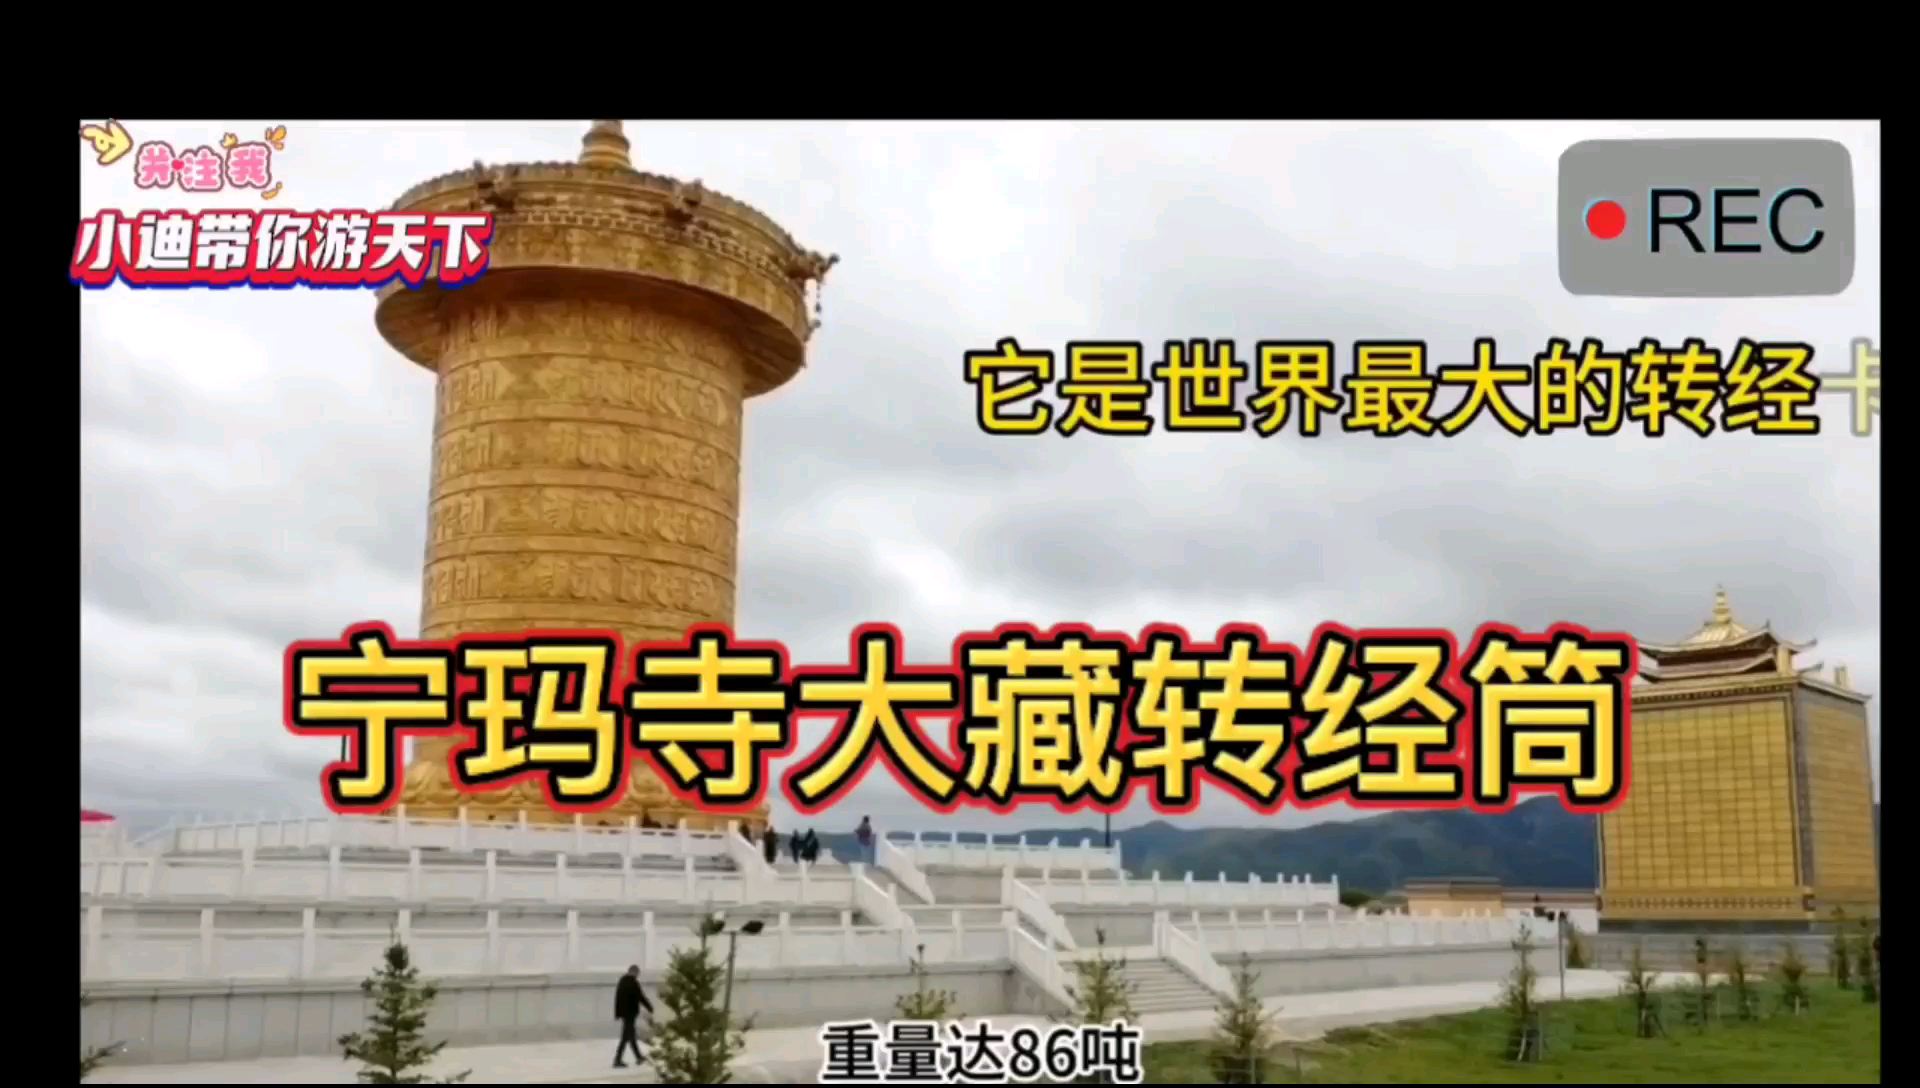 来跟我看看世界上最大转经筒﹌宁玛寺